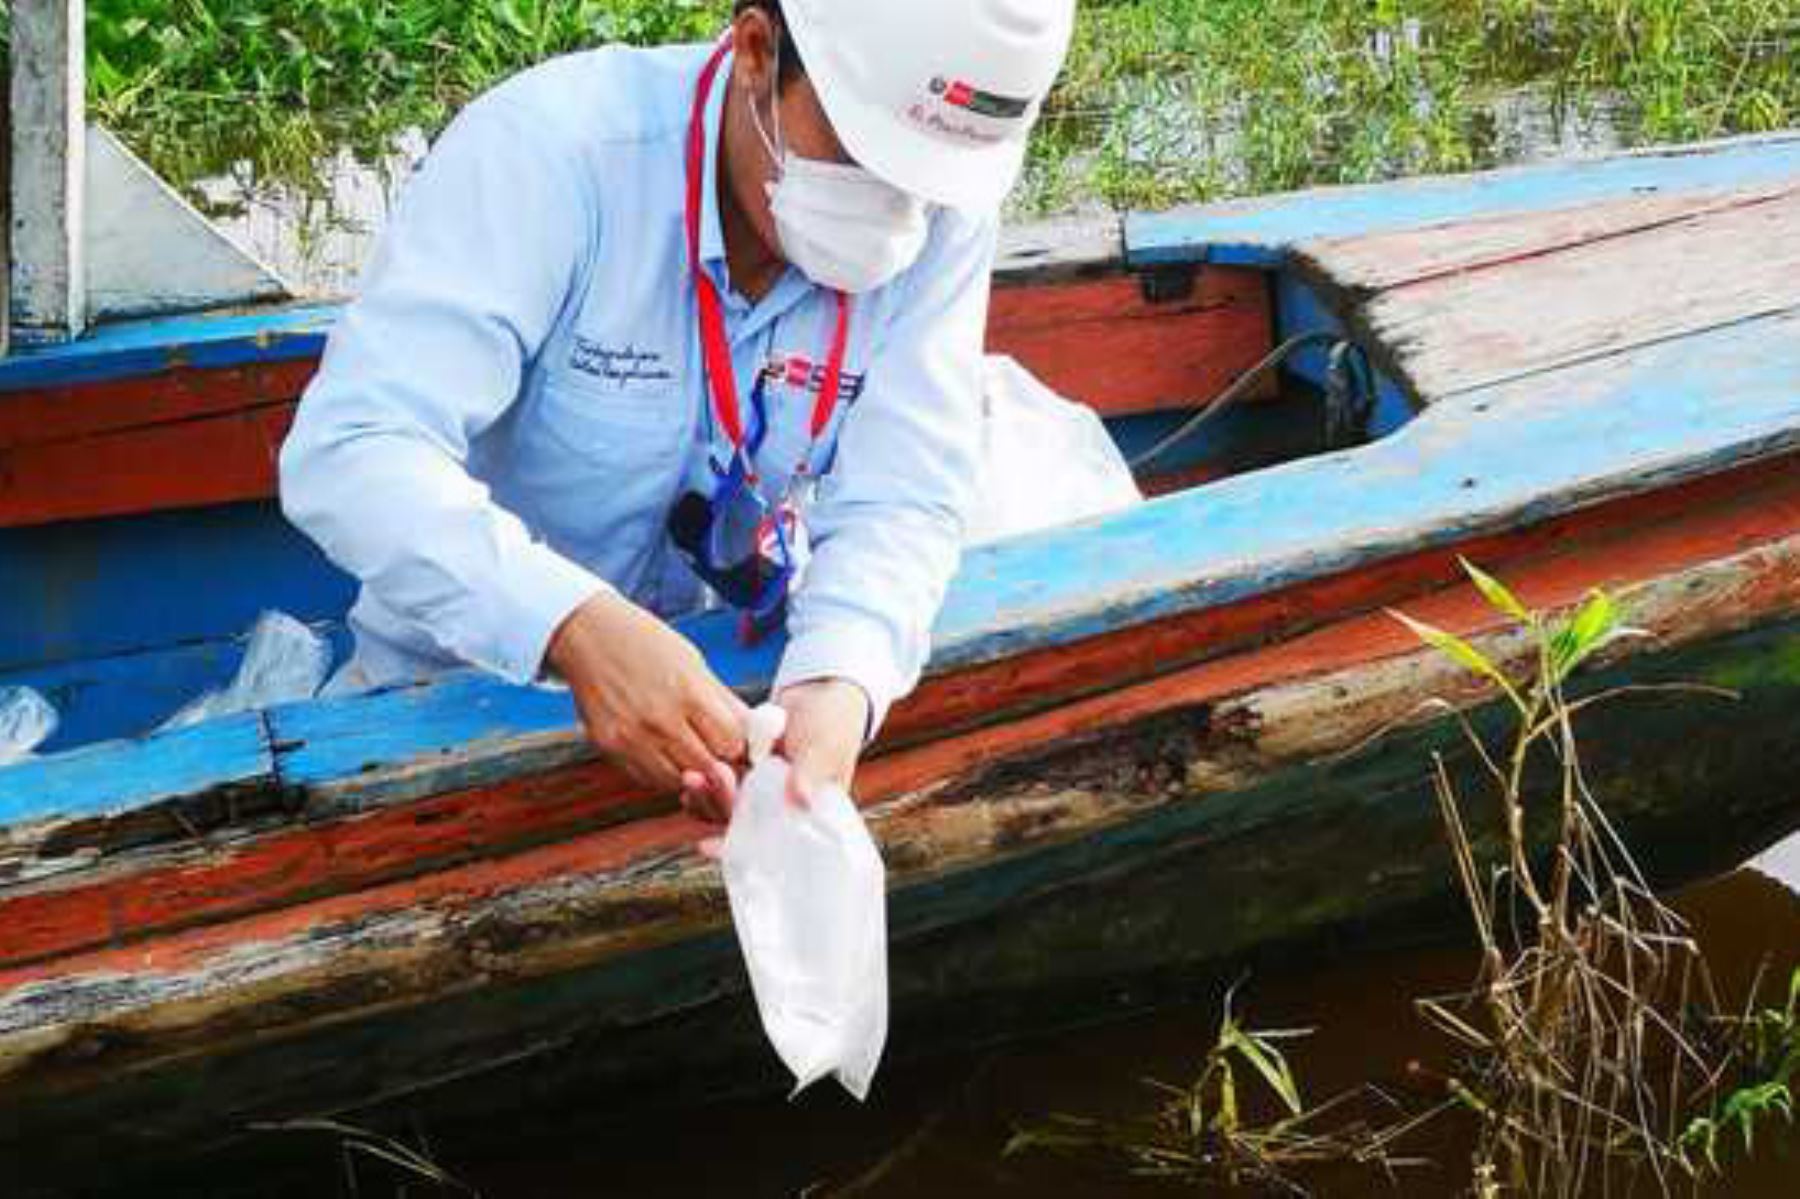 Produce decomisó 11,220 peces ornamentales amazónicos extraídos ilegalmente en Iquitos y los regresó a la cuenca del río Amazonas. Foto: Produce